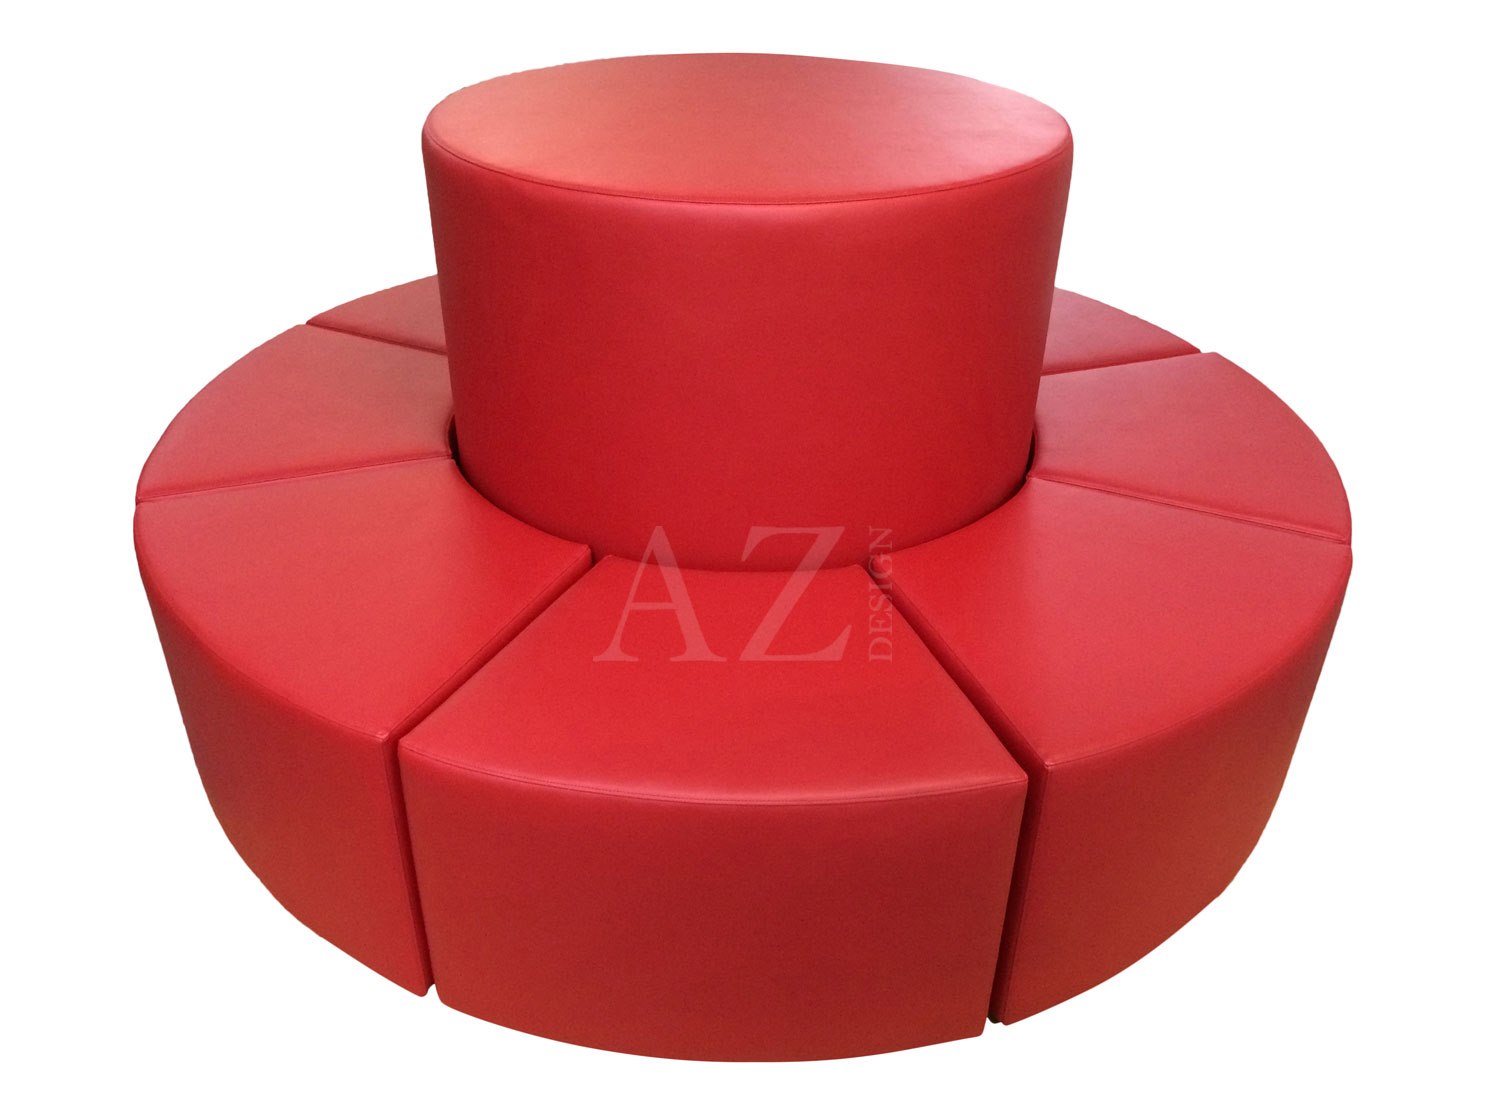 AZ Design Rund sittpuff diameter 200 cm